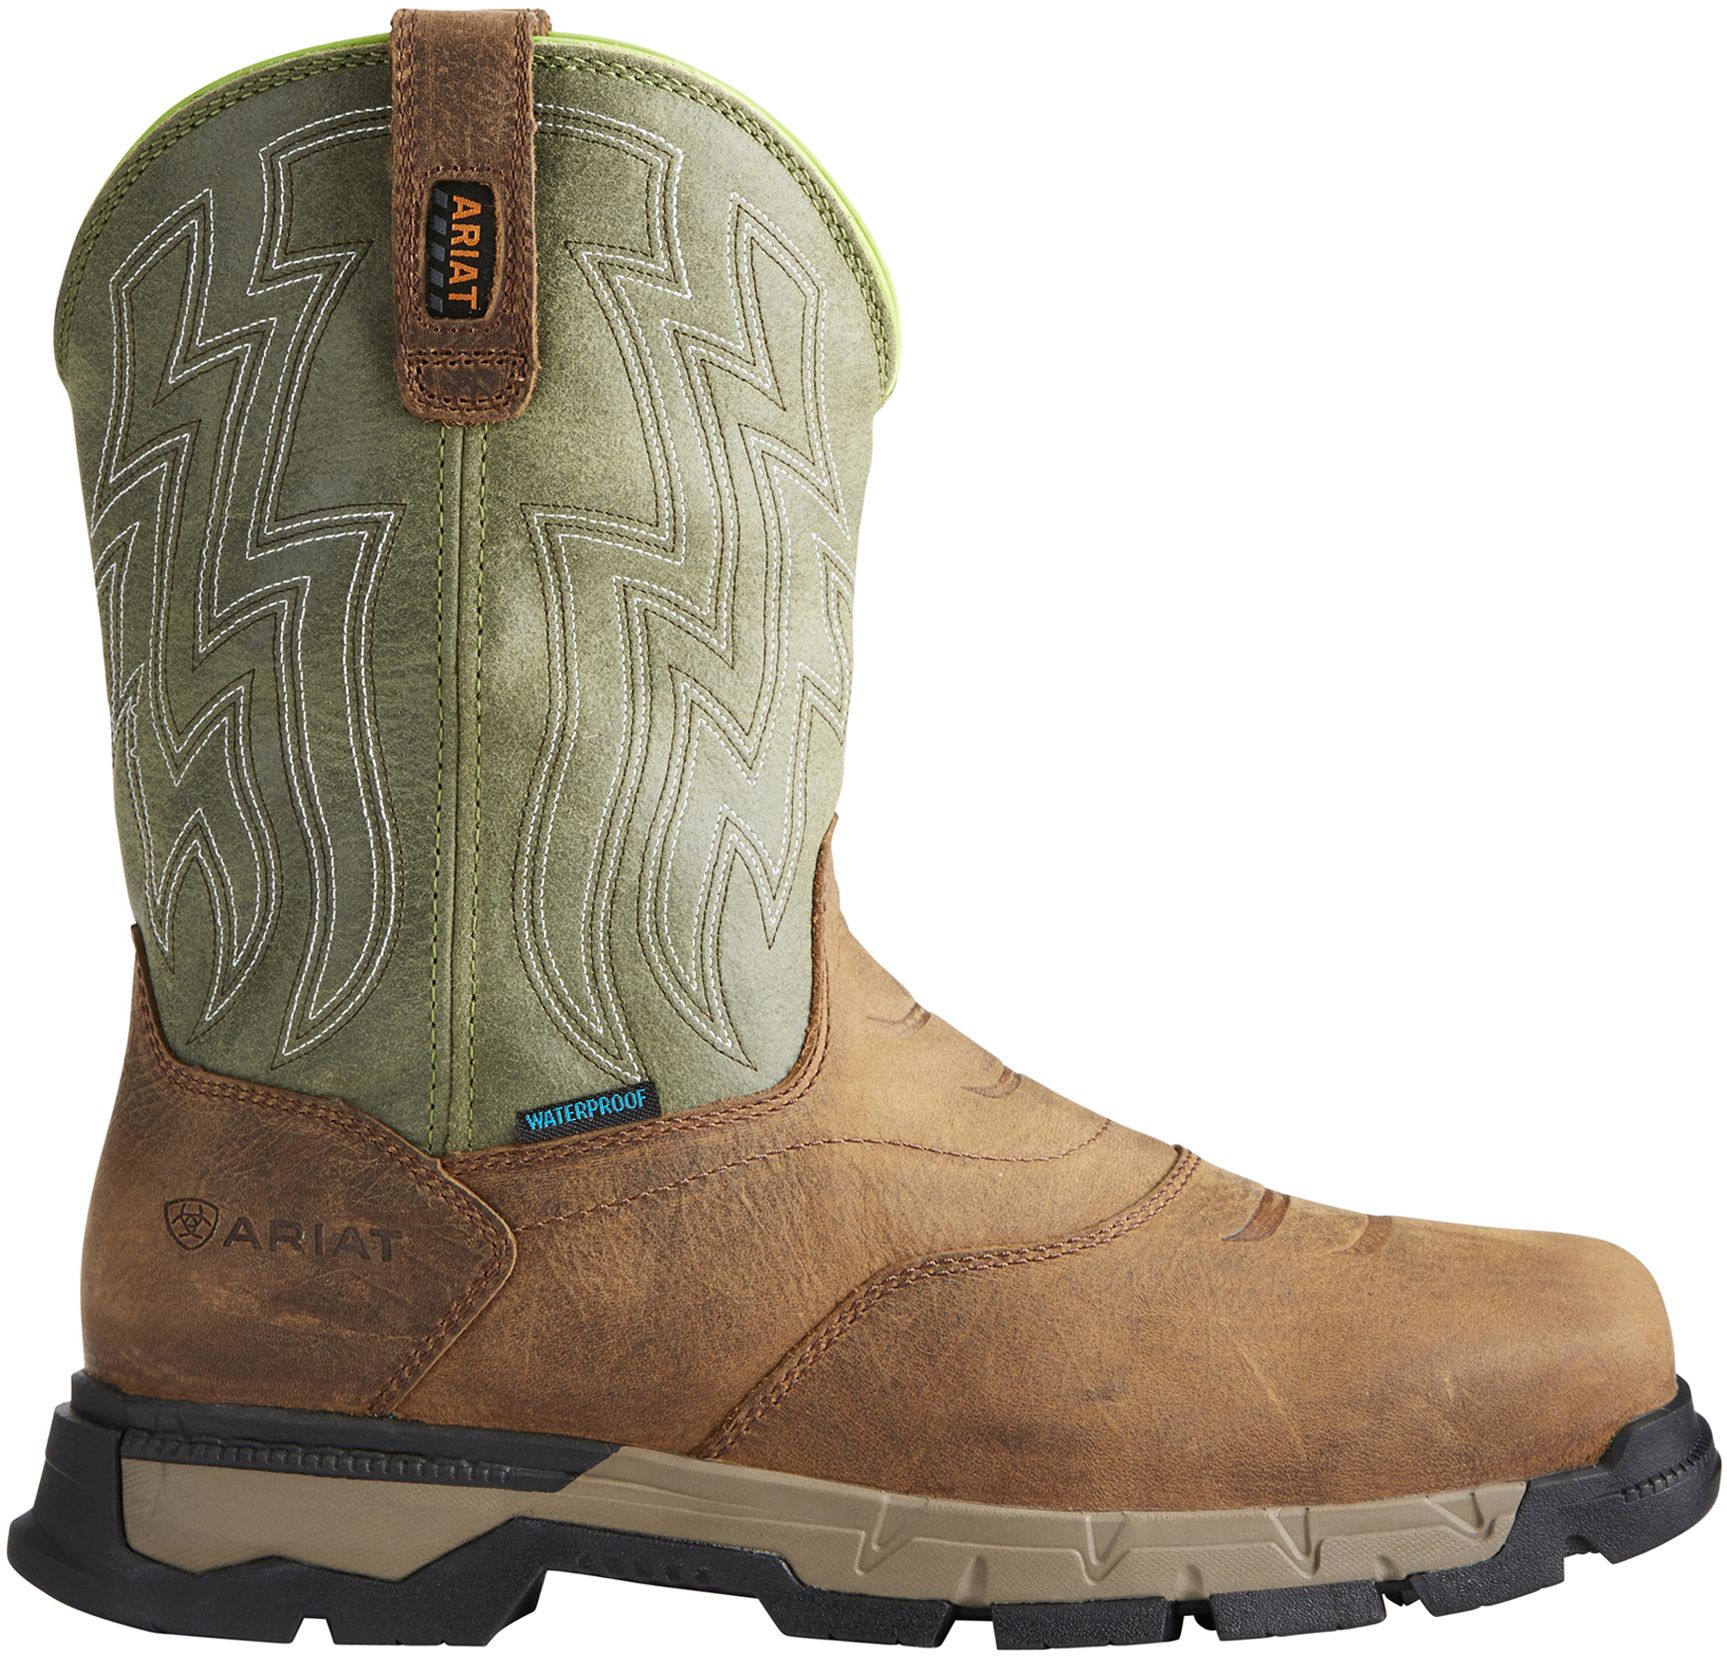 waterproof composite toe work boots